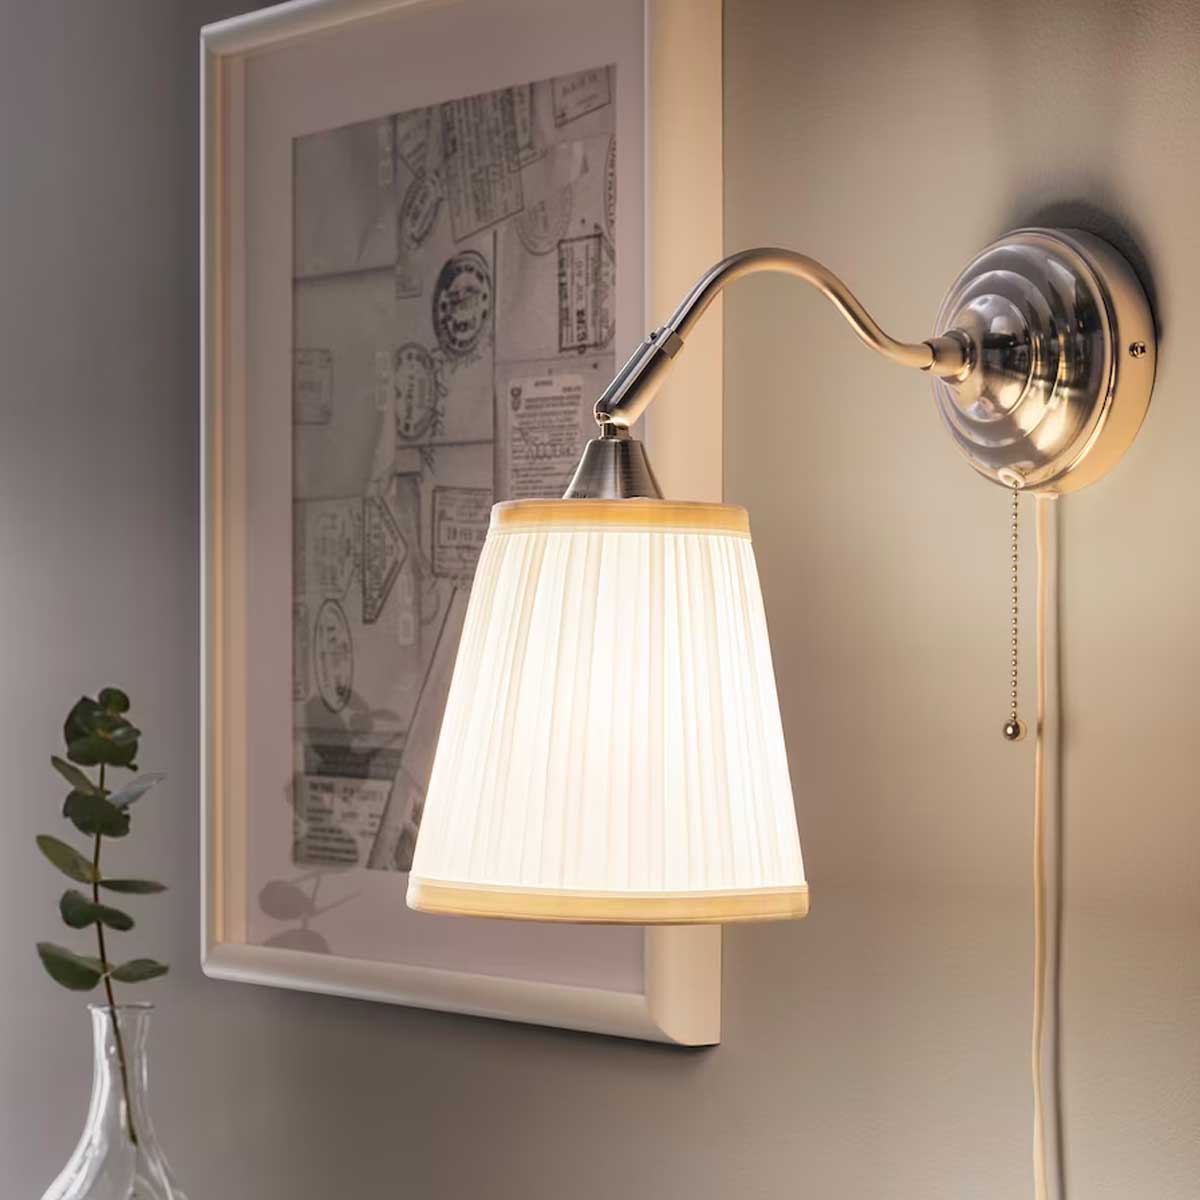 Arstid wall lamp